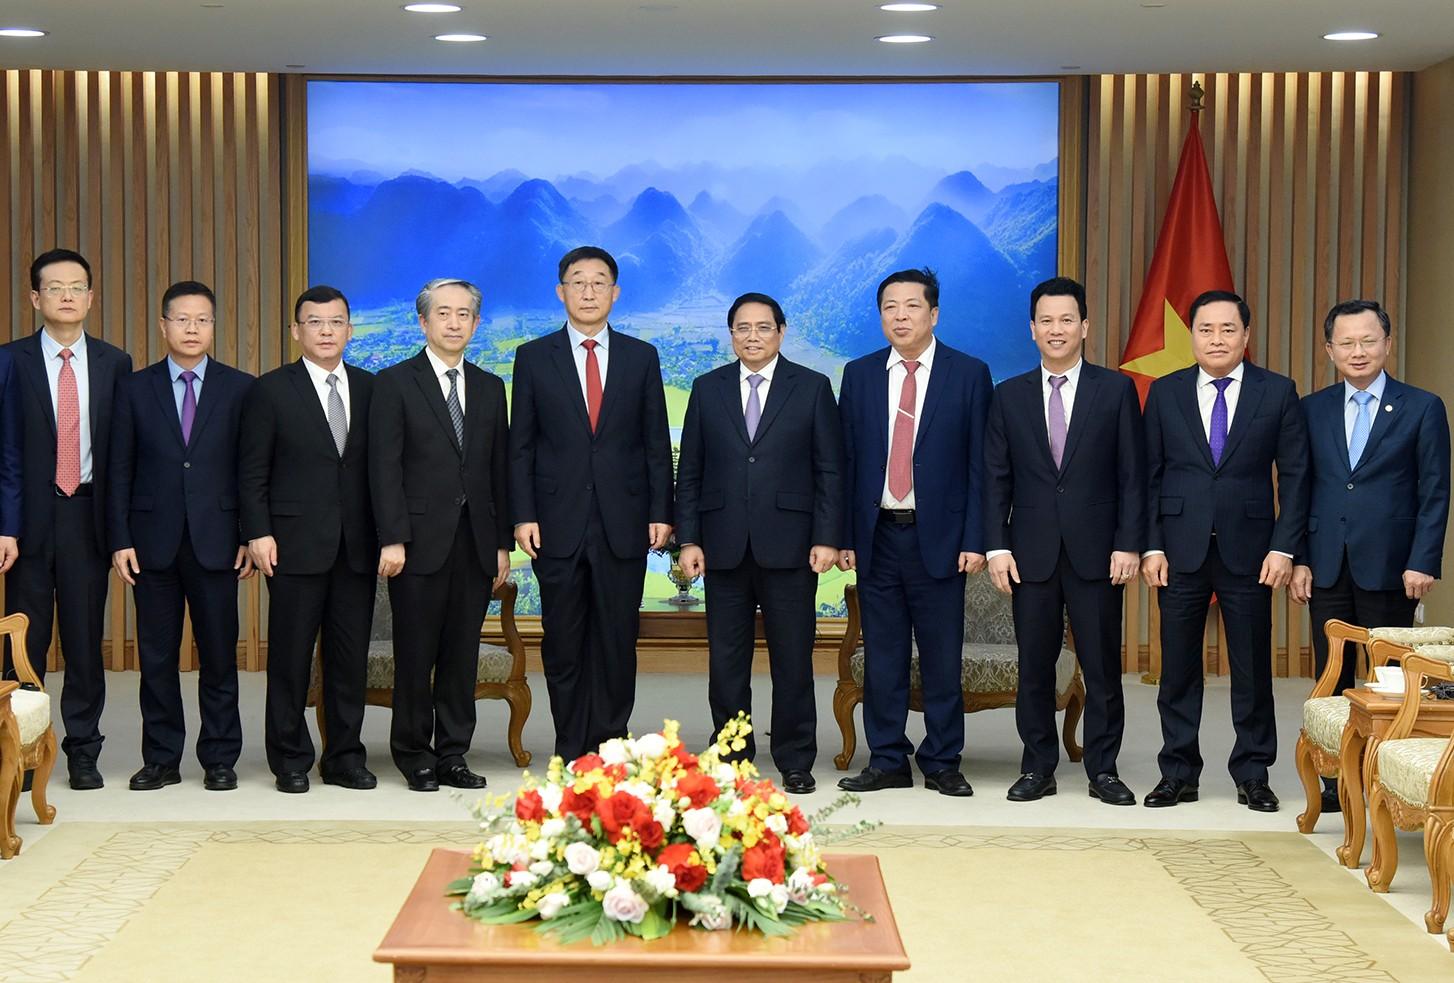 Thủ tướng Phạm Minh Chính và đồng chí Lưu Ninh cùng các đại biểu chụp ảnh chung.